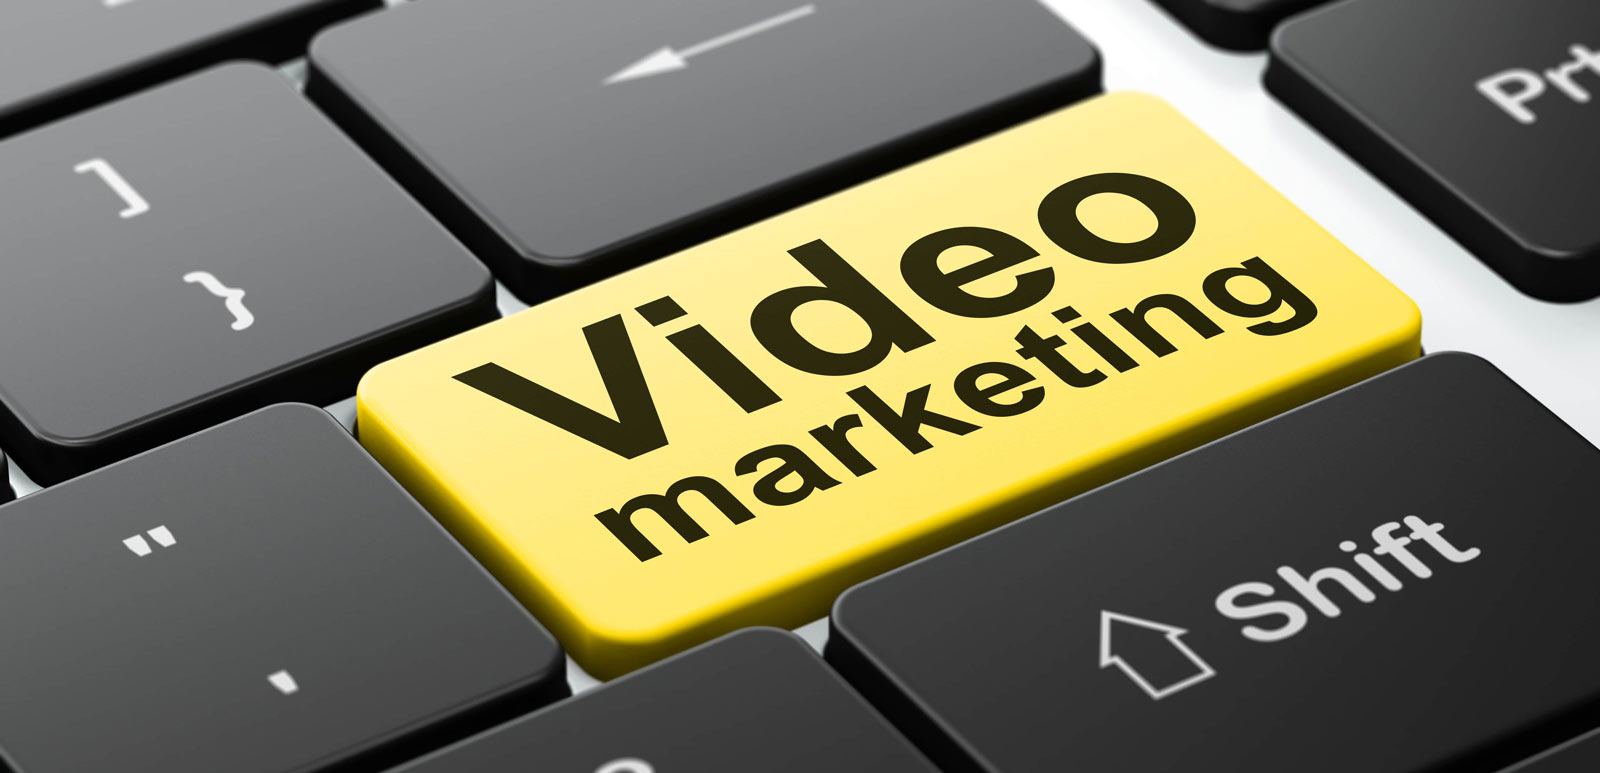 Бизнесу маркет видео. Видеоконтент для бизнеса. Видеомаркетинг. Продающее видео для бизнеса. Видеомаркетинг картинки.